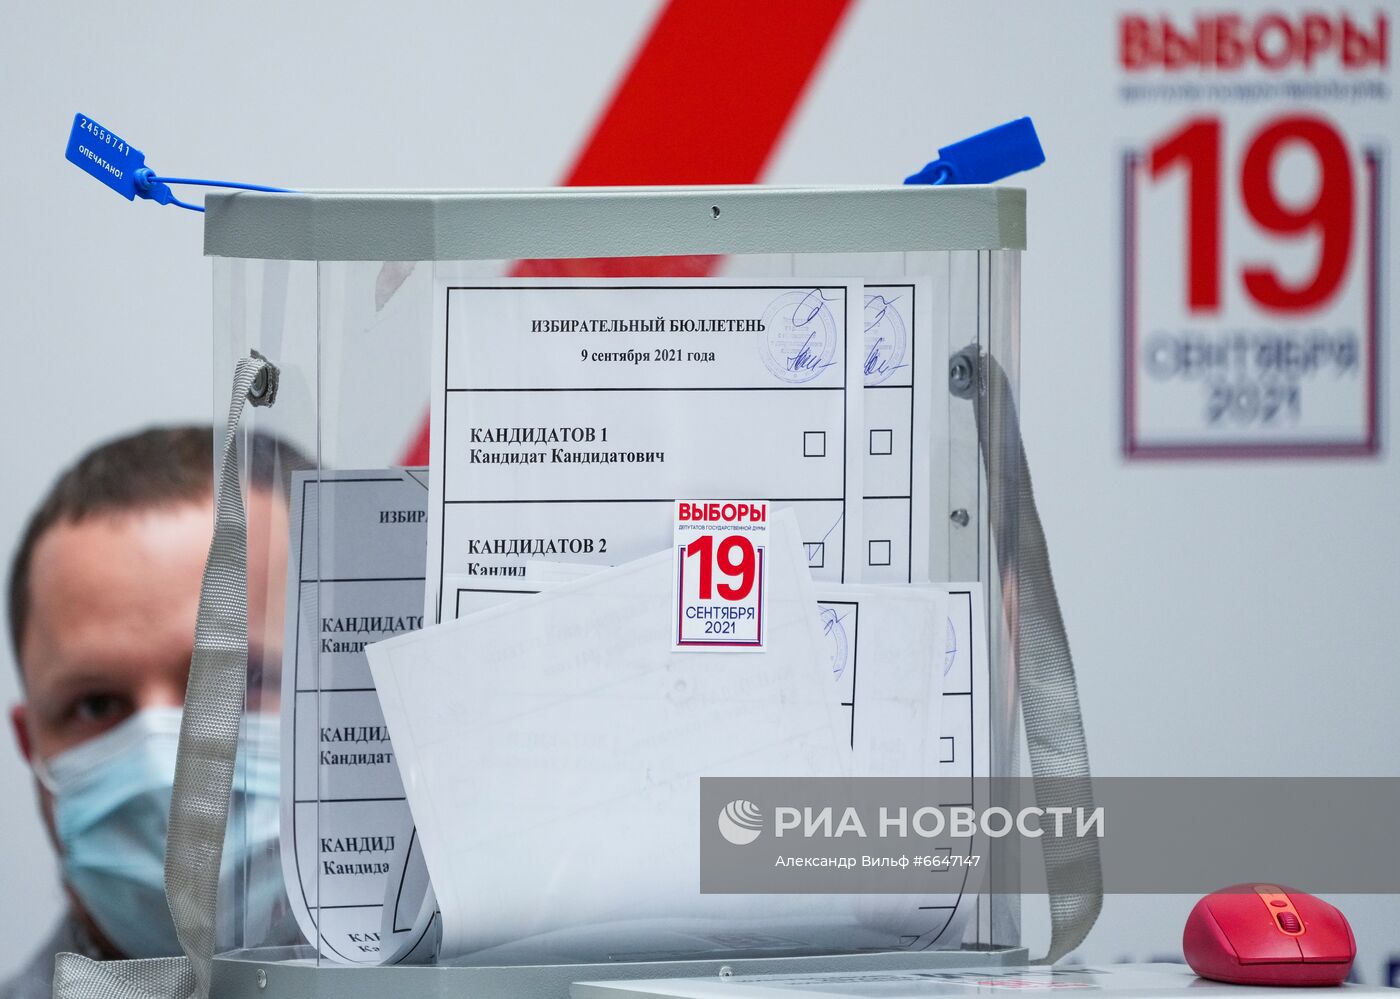 Открытое тестовое голосование в ЦИК России в рамках тренировки ДЭГ